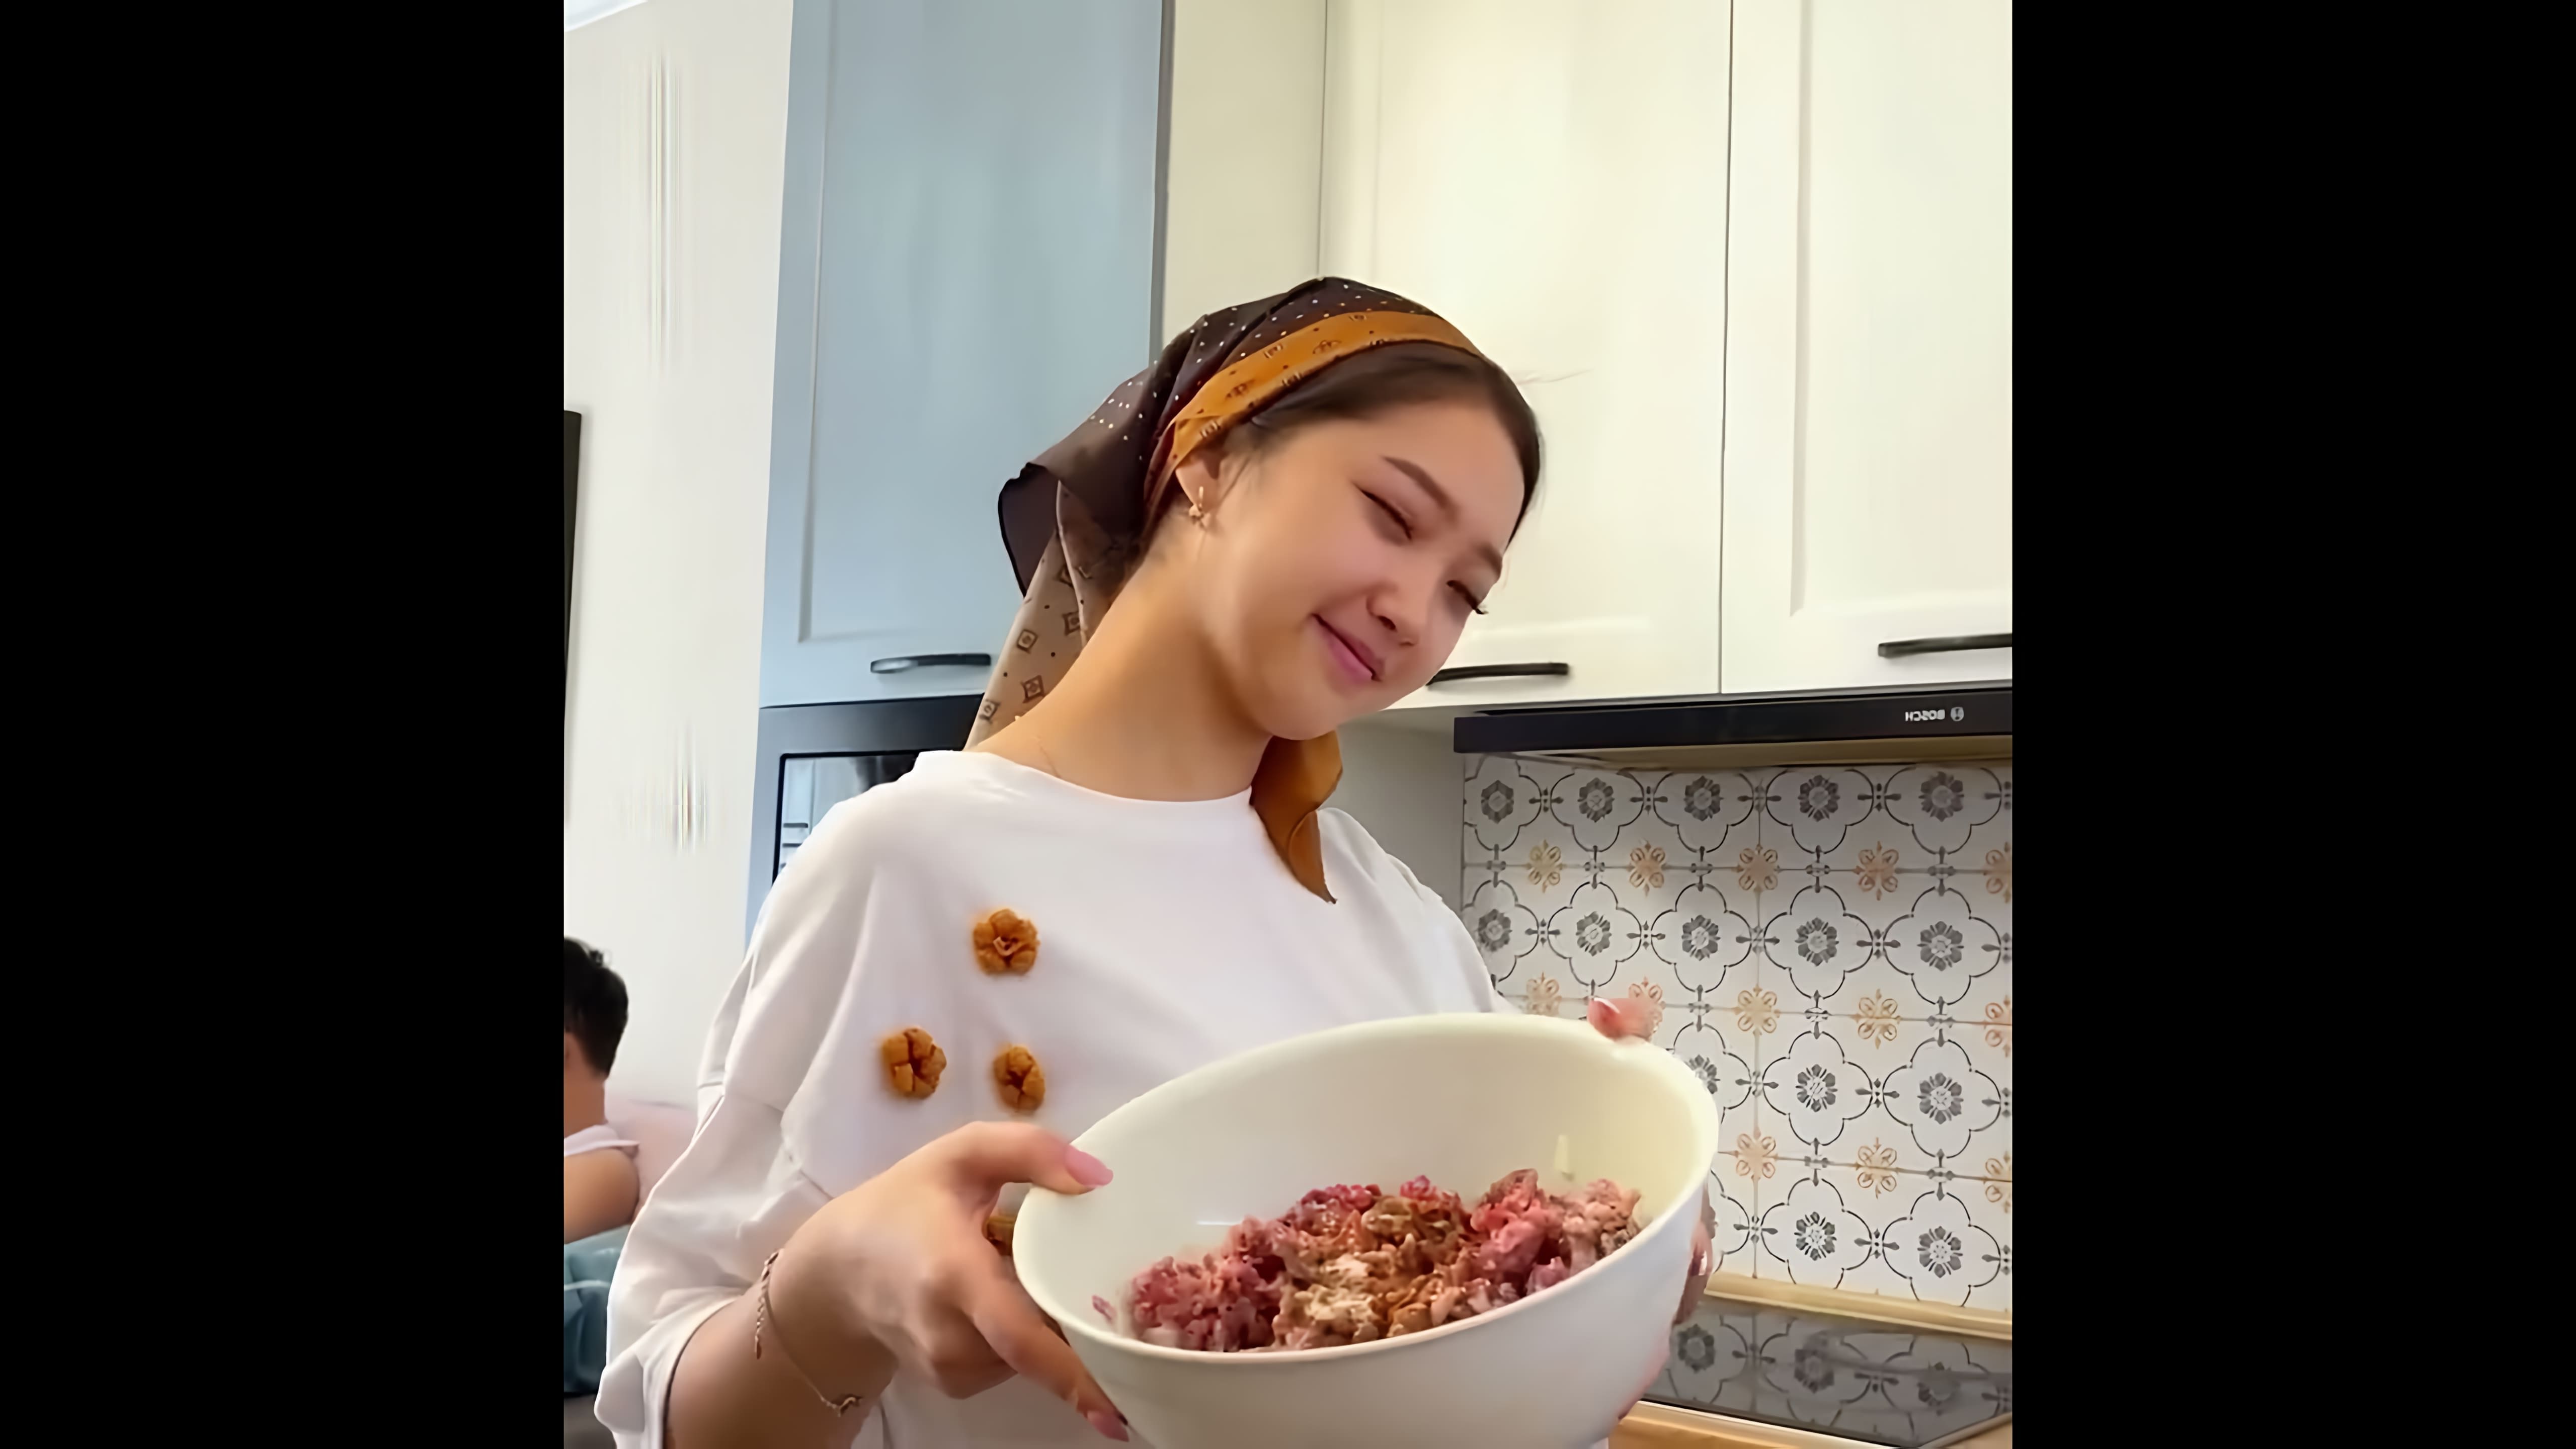 ХАМИР ХАСИП (Узбекская кухня) - это видео-ролик, который представляет собой обзор на блюда узбекской кухни